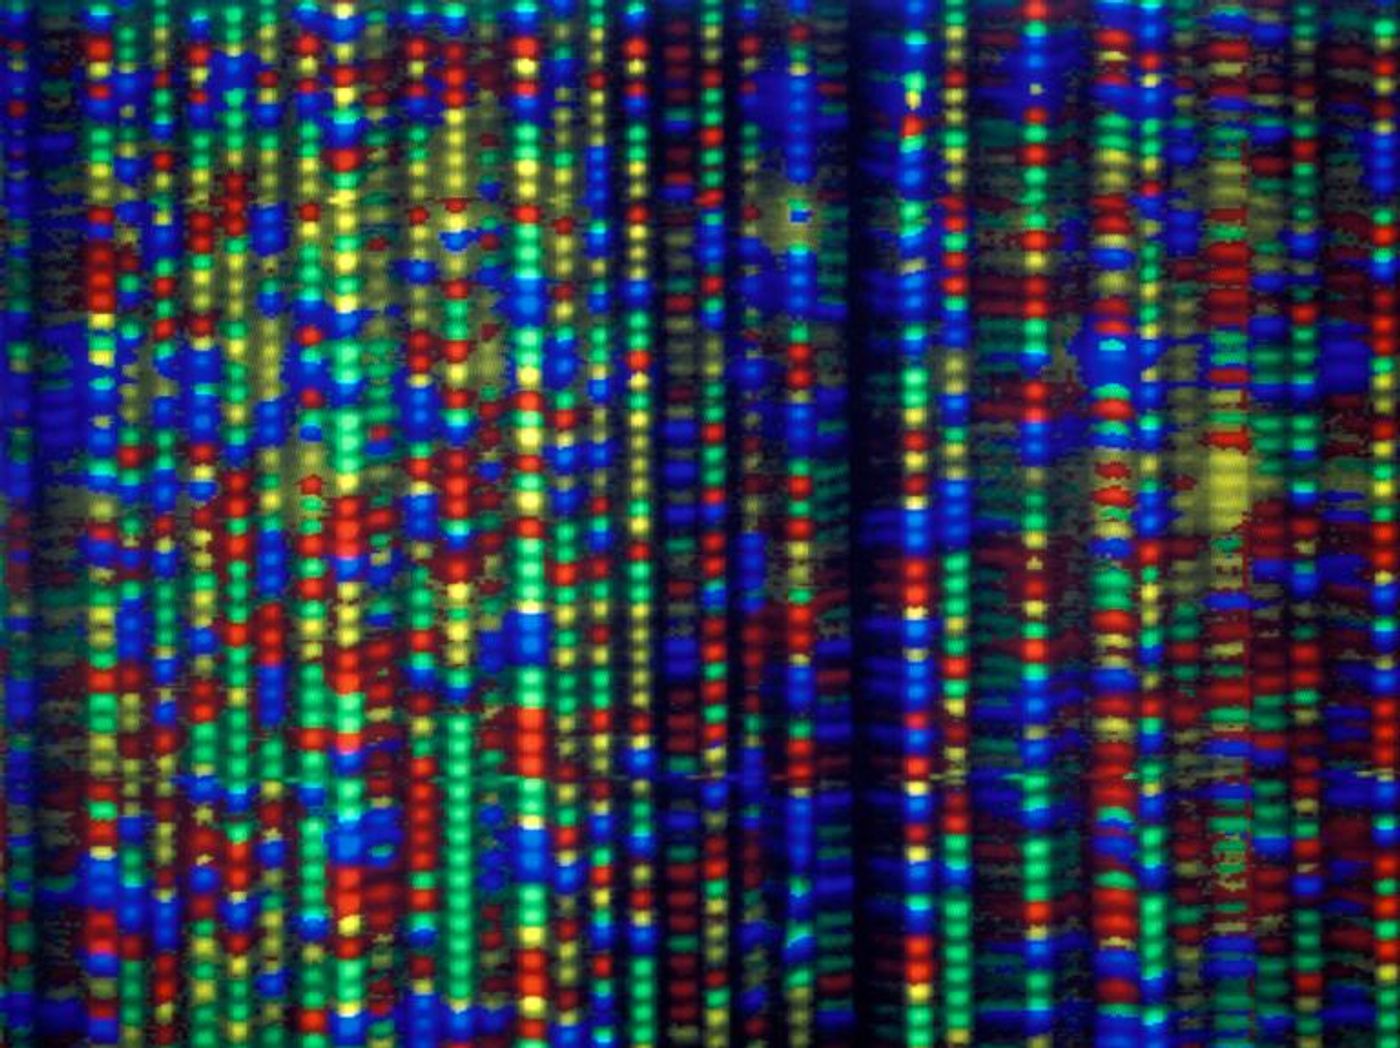 Labelled strands of DNA